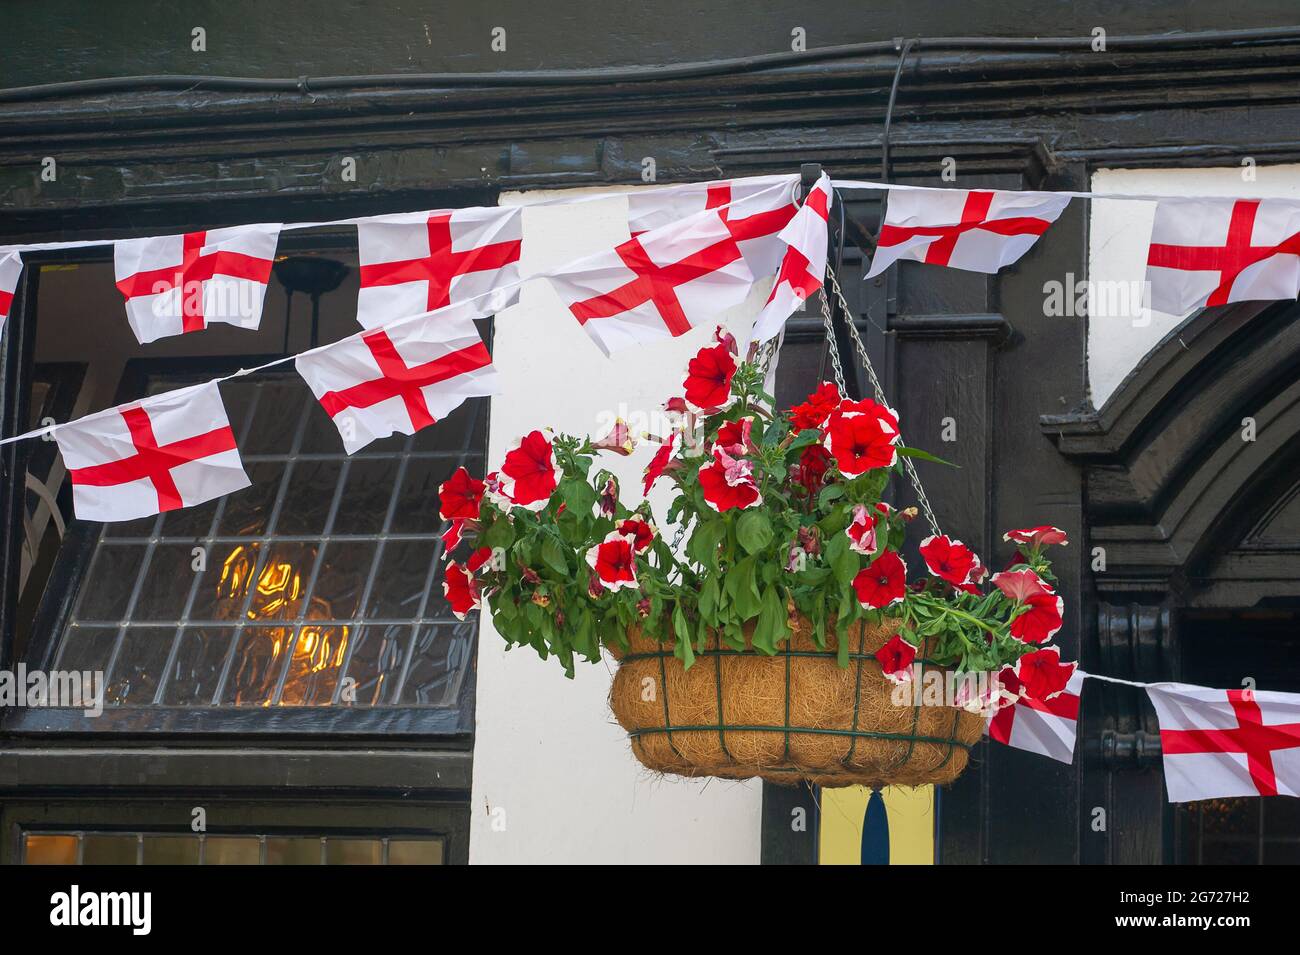 Uxbridge, London Borough of Hillingdon, 9. Juli 2021. Im Three Tuns Pub in Uxbridge gibt es englische Flaggen und Fahnen, die sich auf das große UEFA Euro 2020 Finale am Sonntag zwischen England und Italien vorbereiten. Quelle: Maureen McLean/Alamy Stockfoto